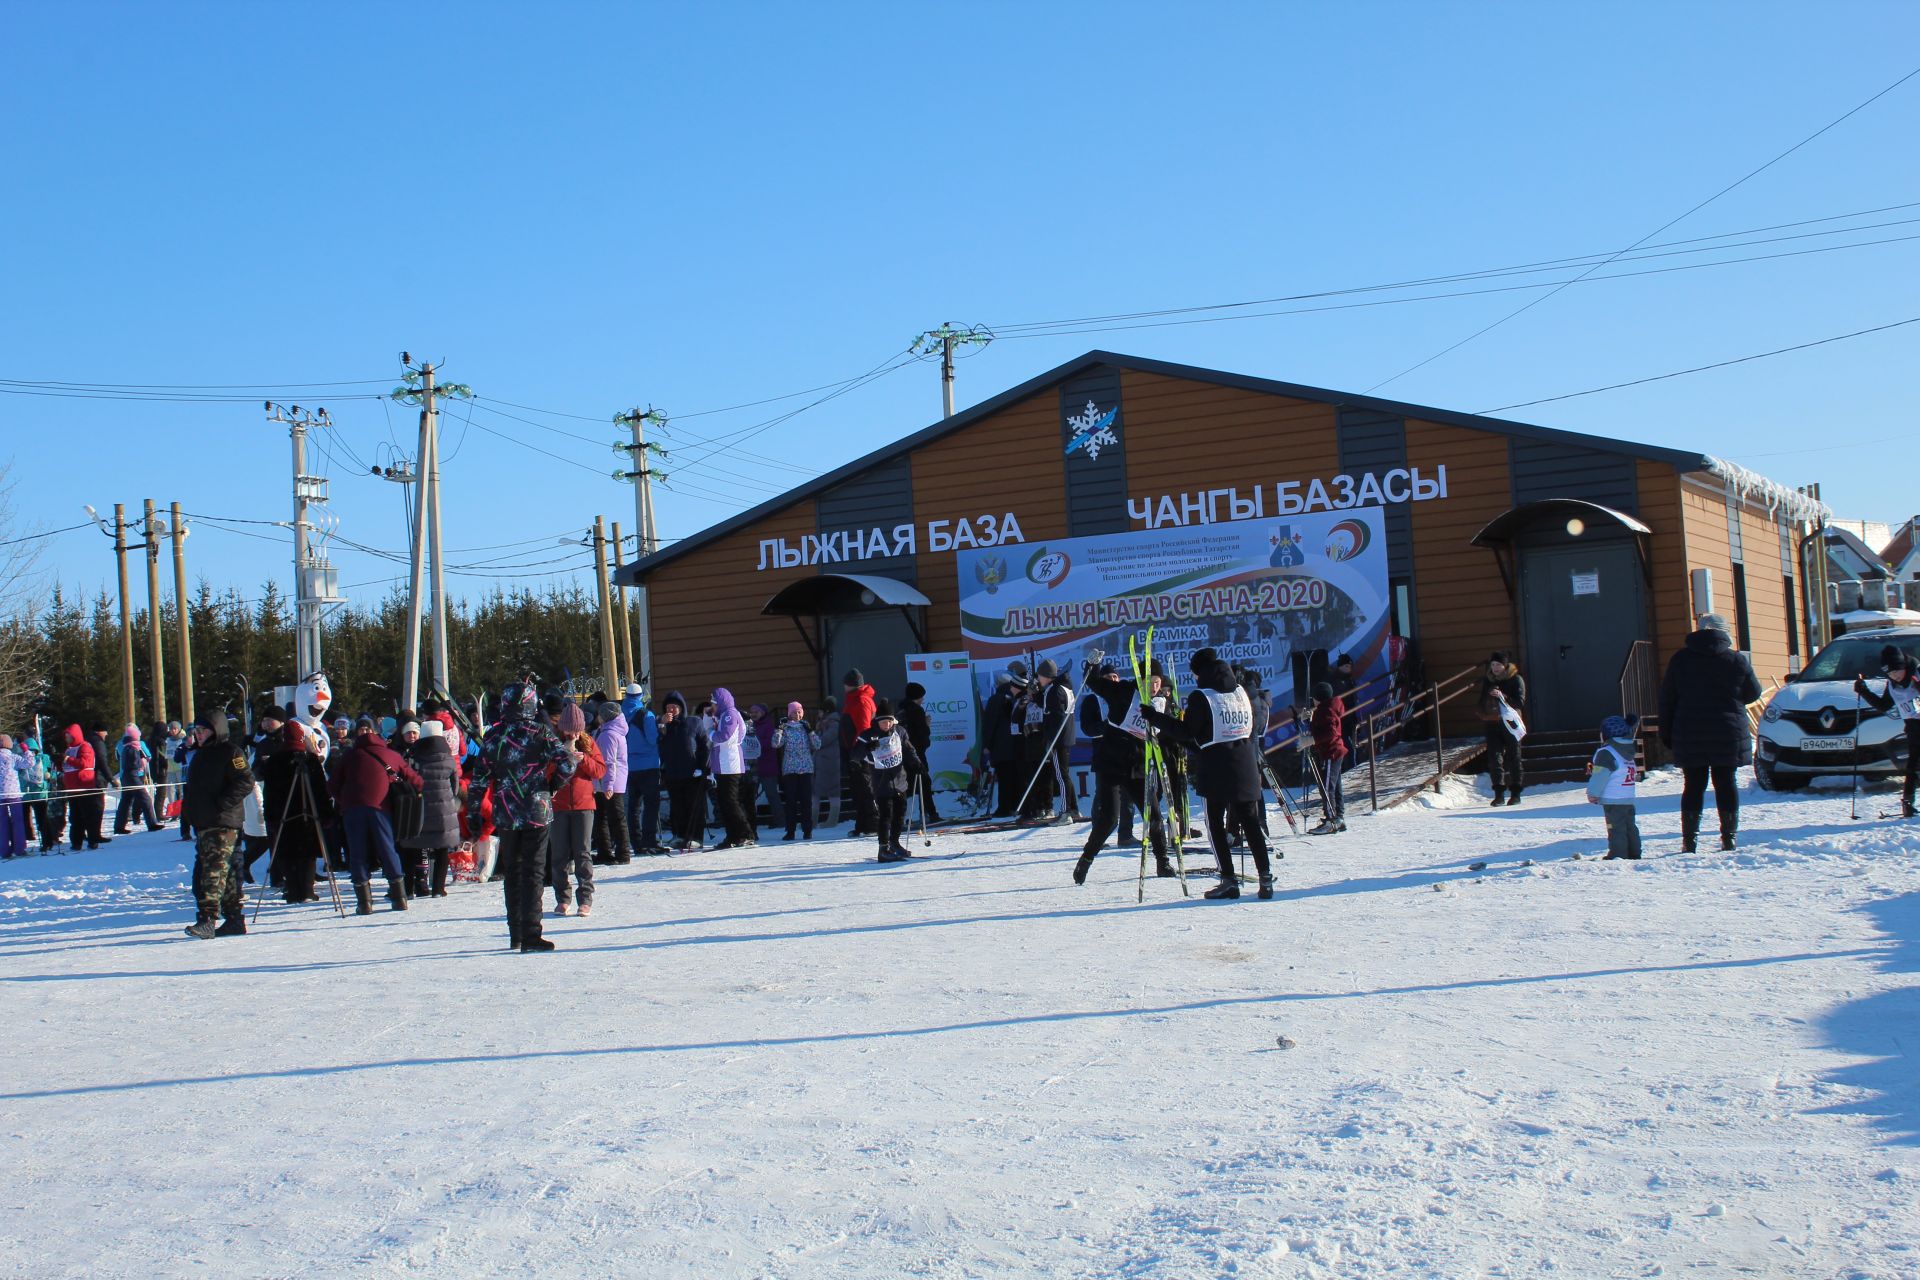 Менделеевцы вышли на массовый забег лыжня Татарстана-2020